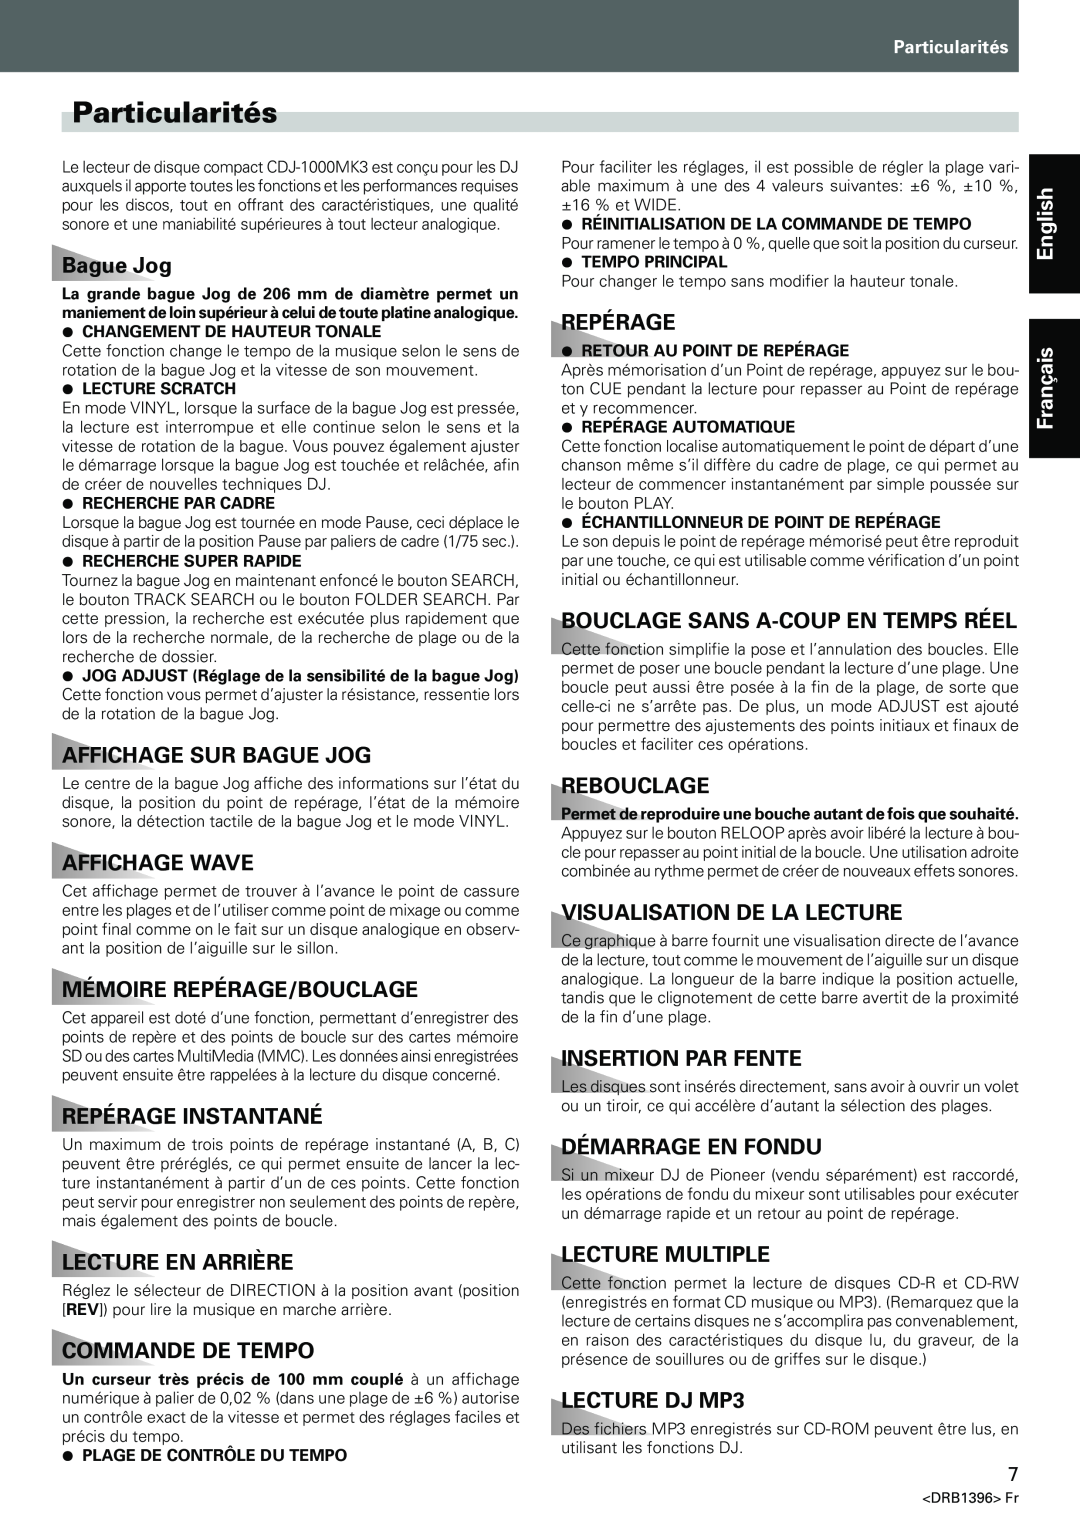 Pioneer CDJ-1000MK3 Particularités, Affichage Sur Bague Jog, Affichage Wave, Mémoire Repérage/Bouclage, Rebouclage 